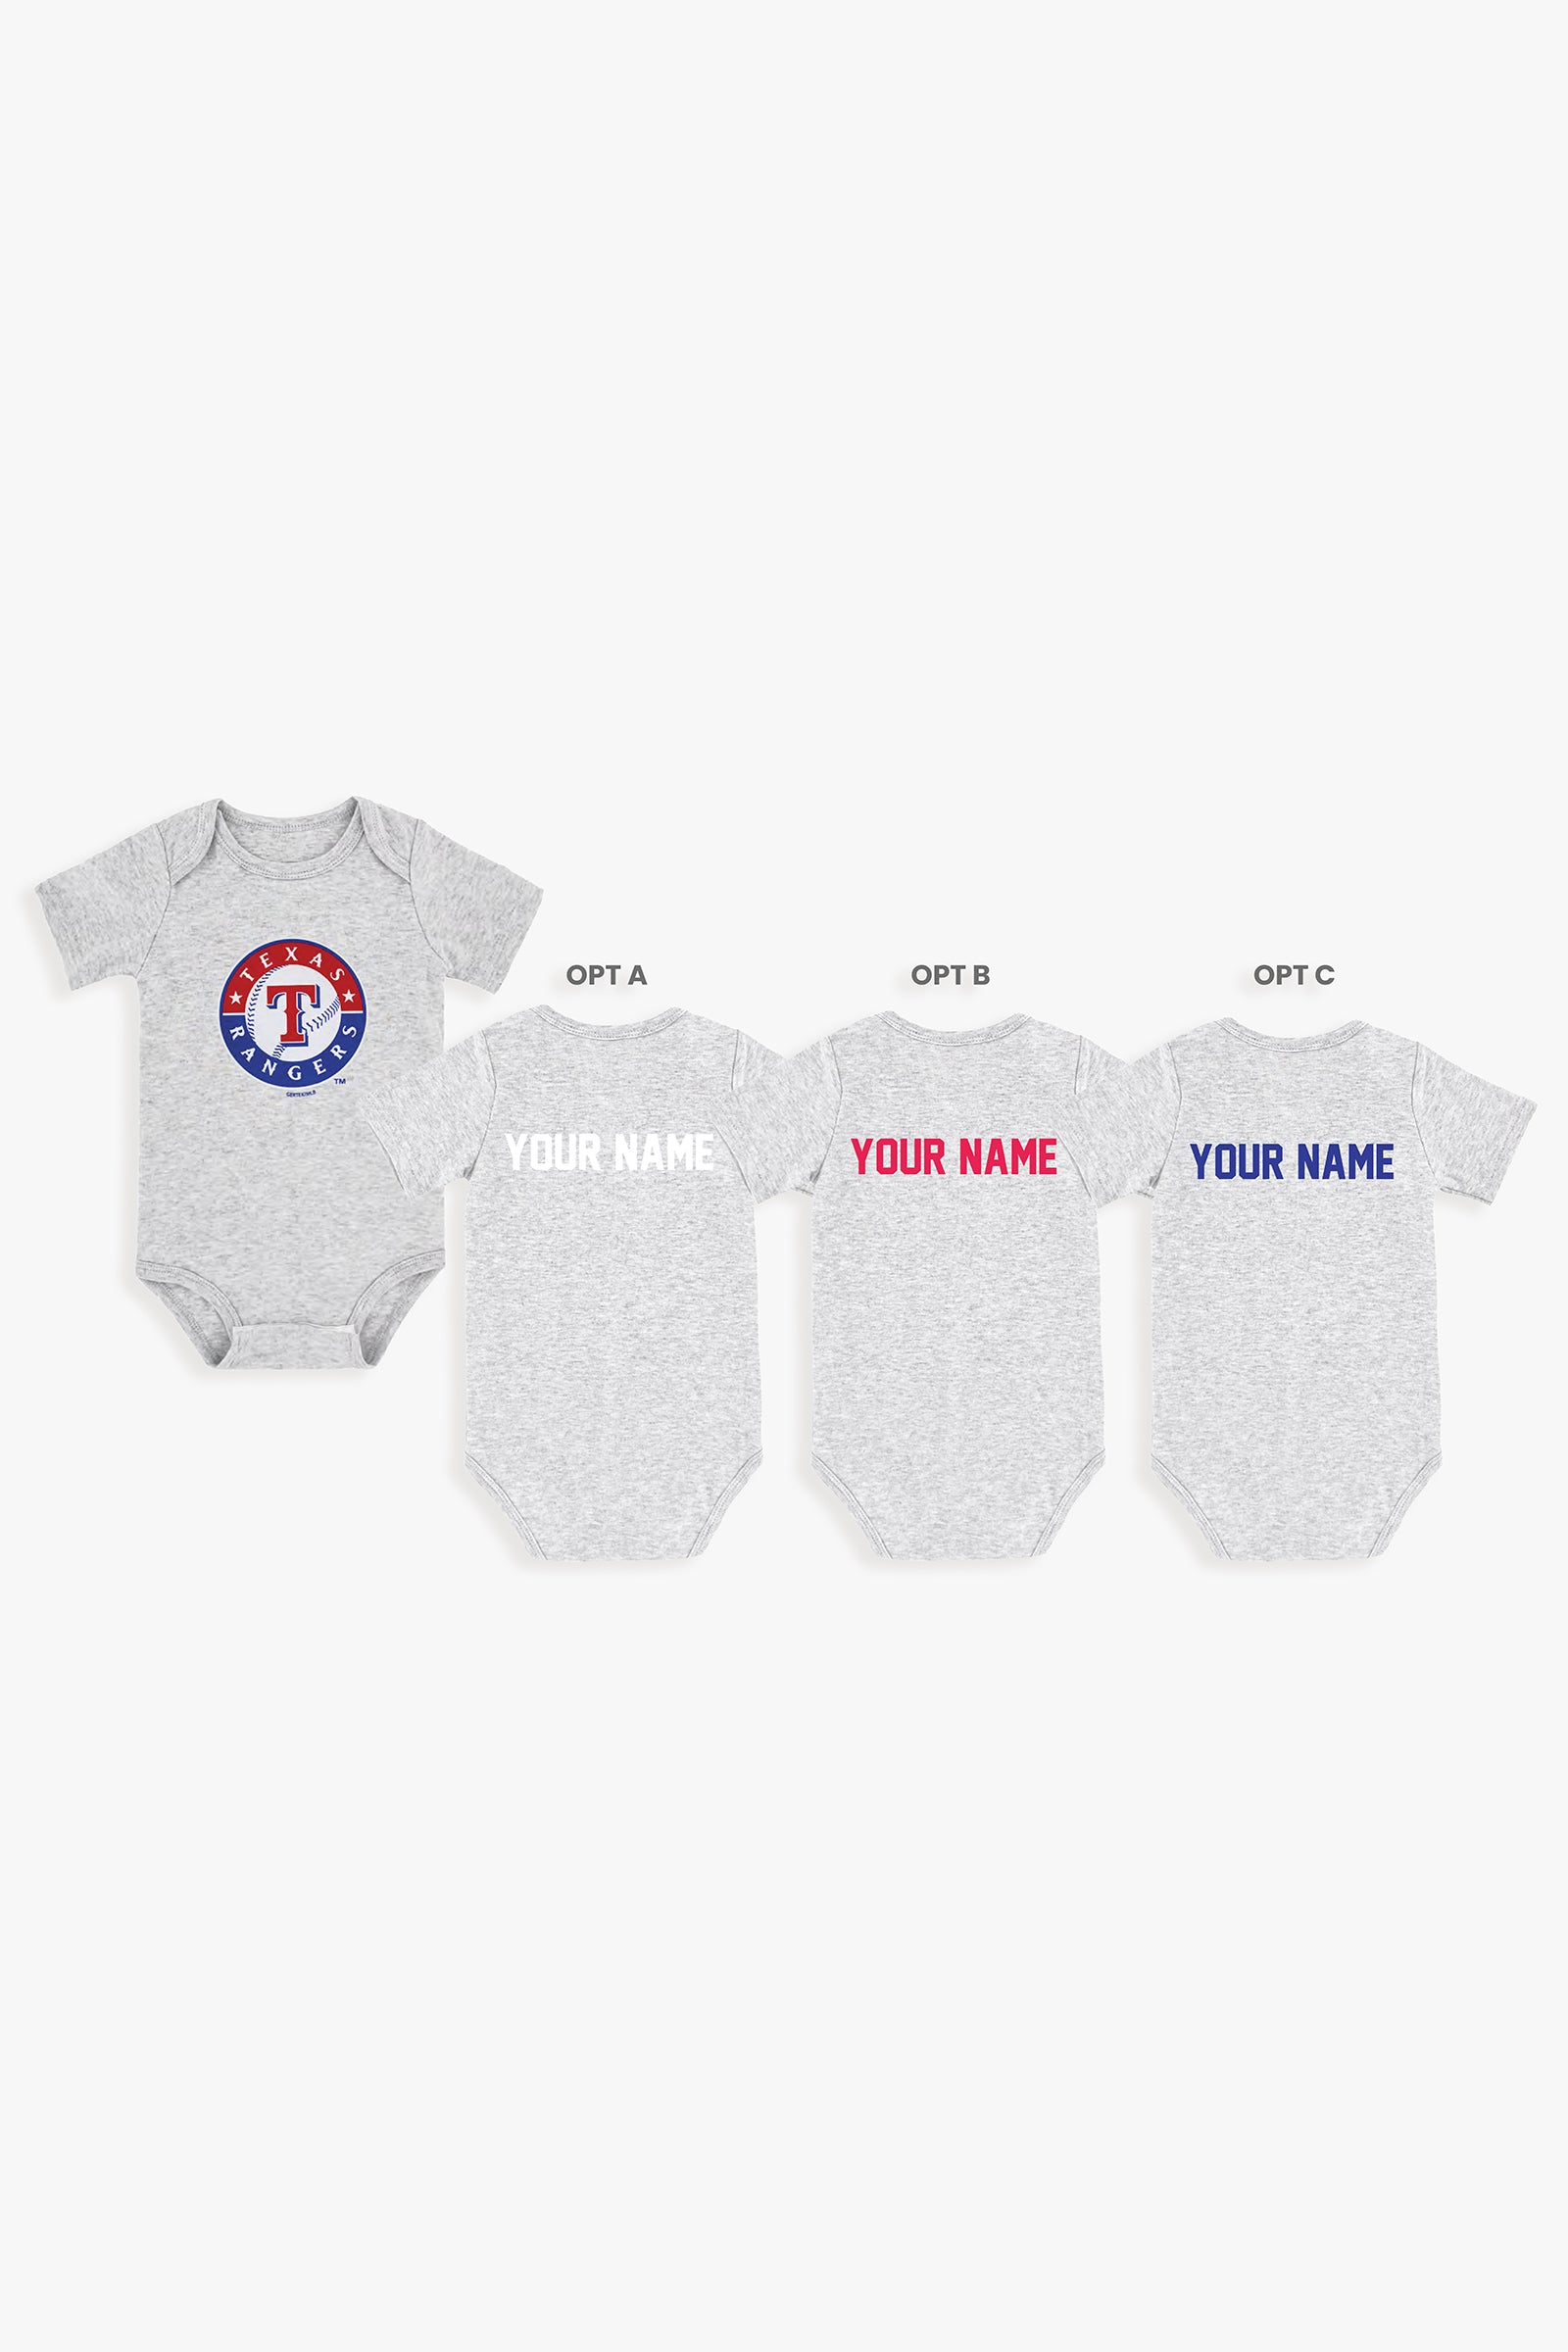 Gertex Customizable MLB Baby Onesie Bodysuit in Grey (0-3 Months)